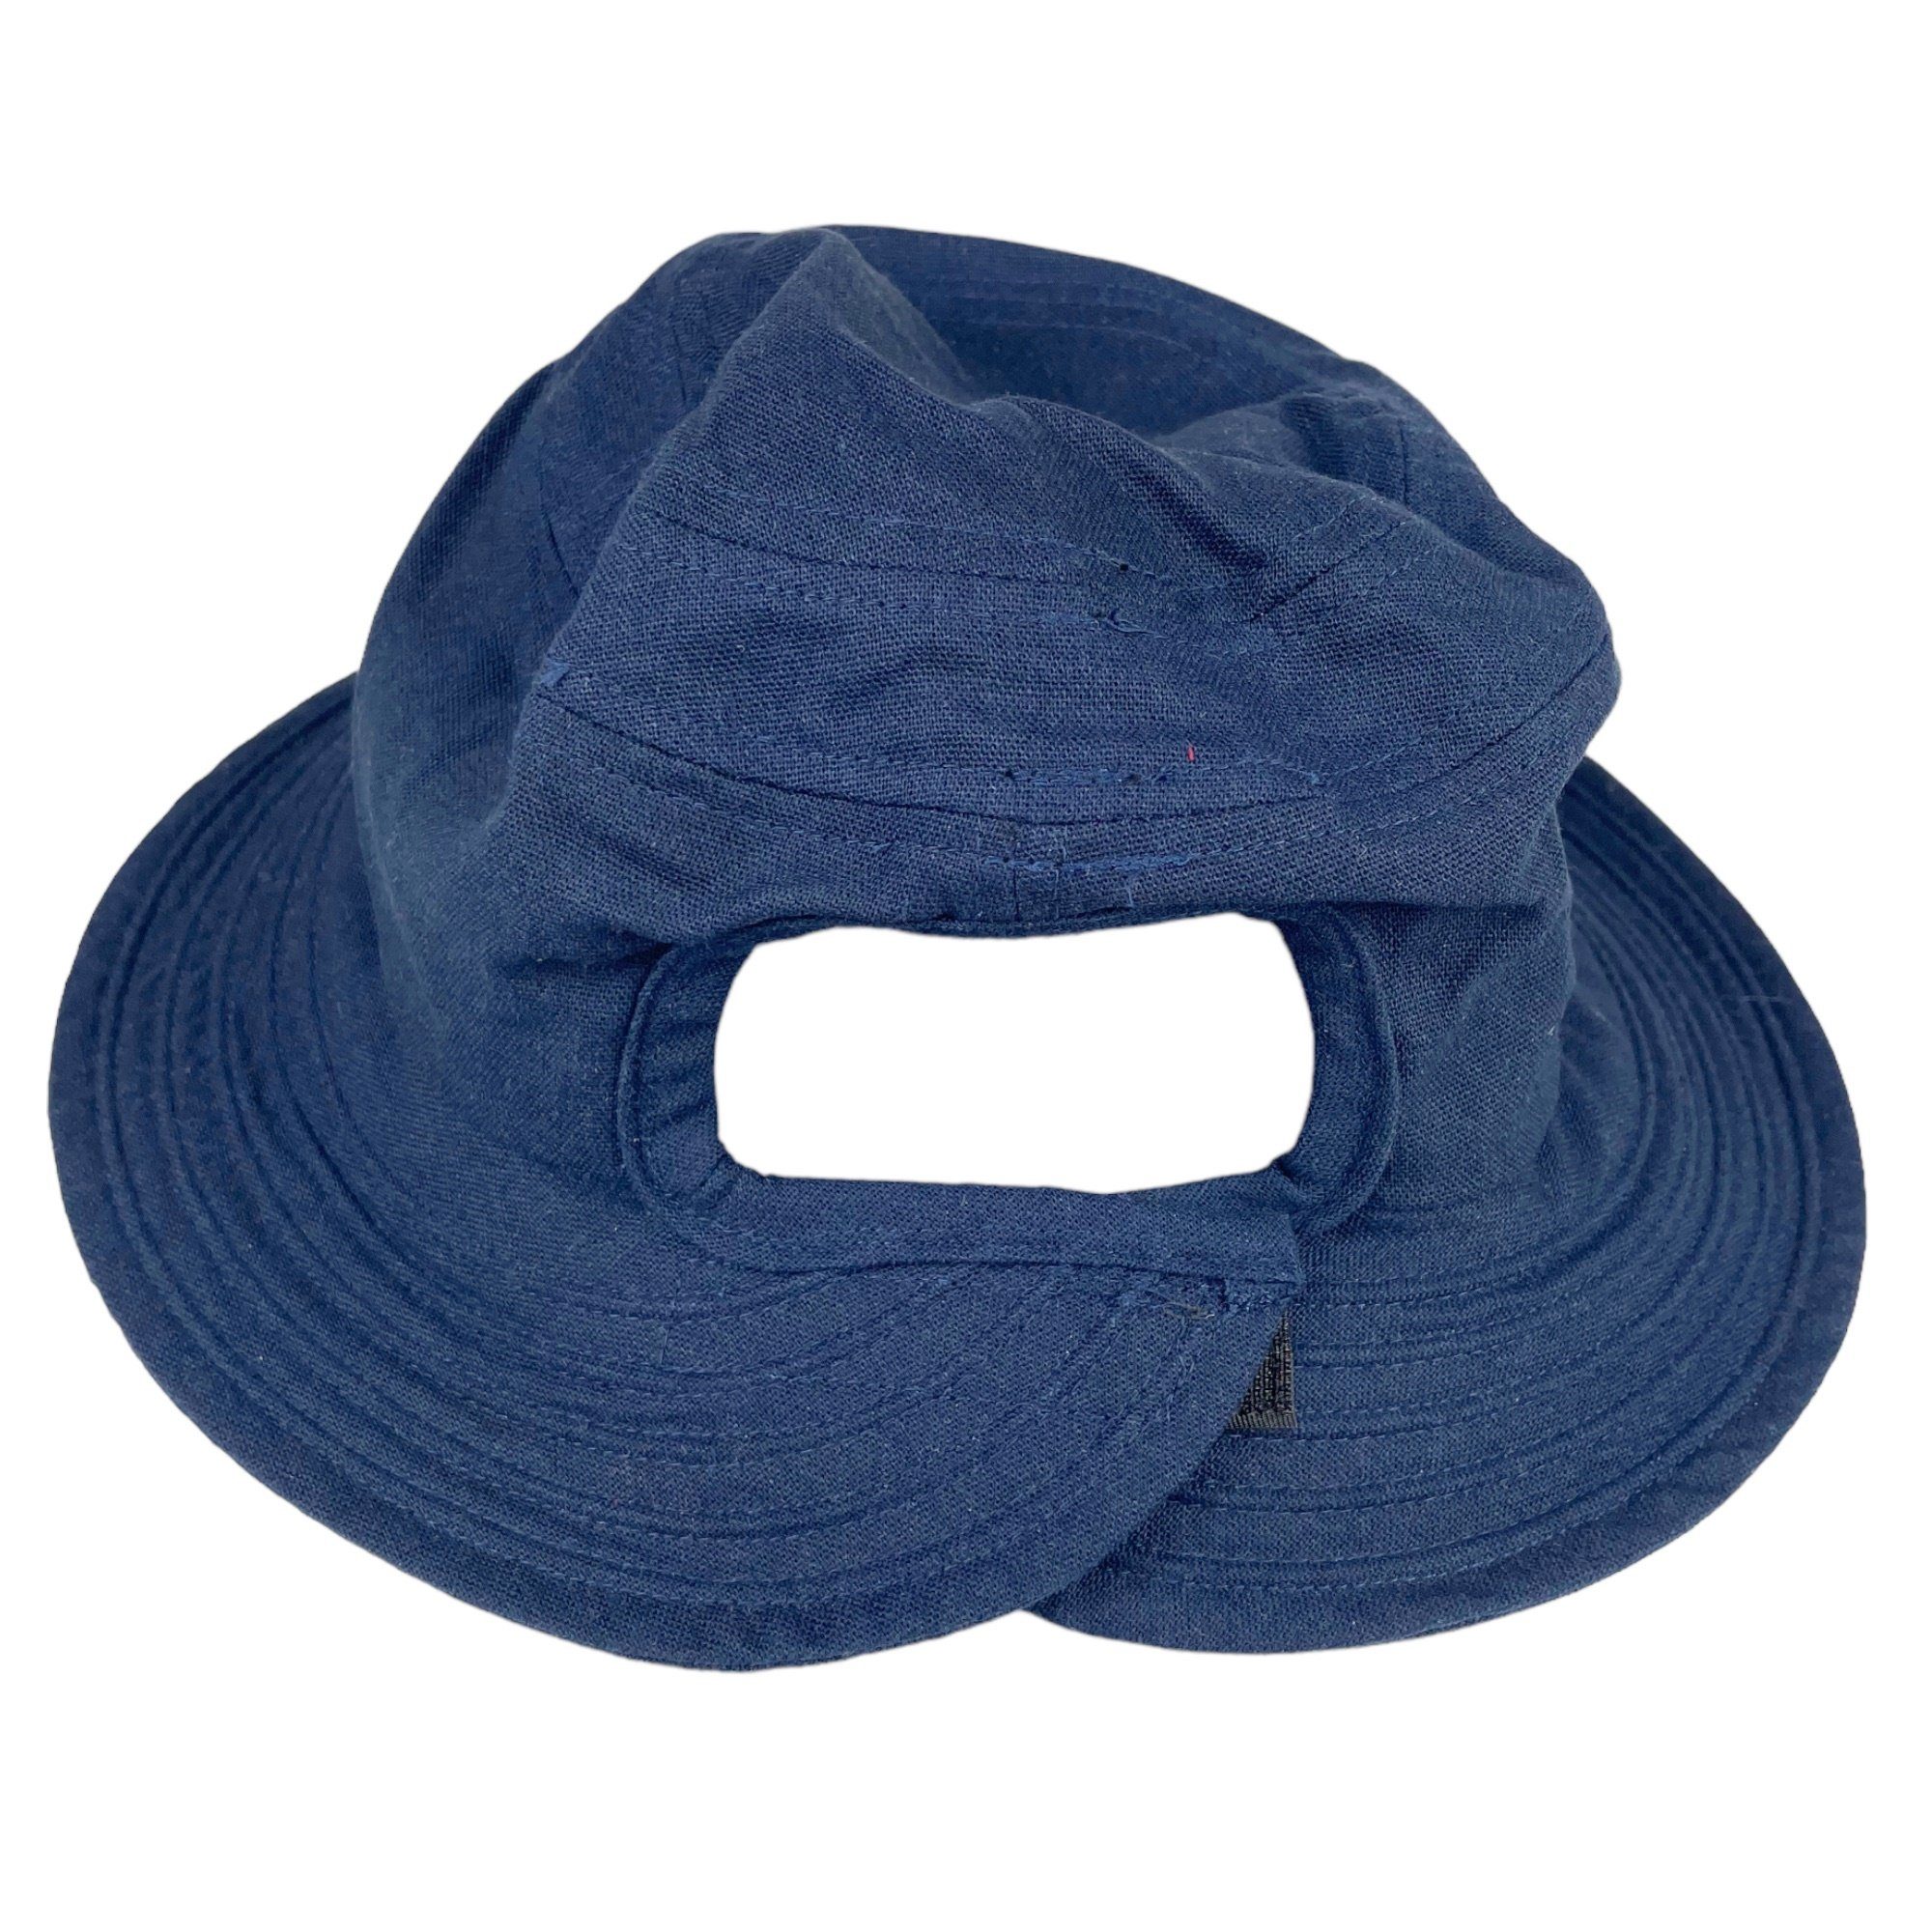 Taschen4life Sonnenhut Modischer Sommer Hut Hat, unisex, marineblau Bucket Leinen Fischerhut Größenverstellbar